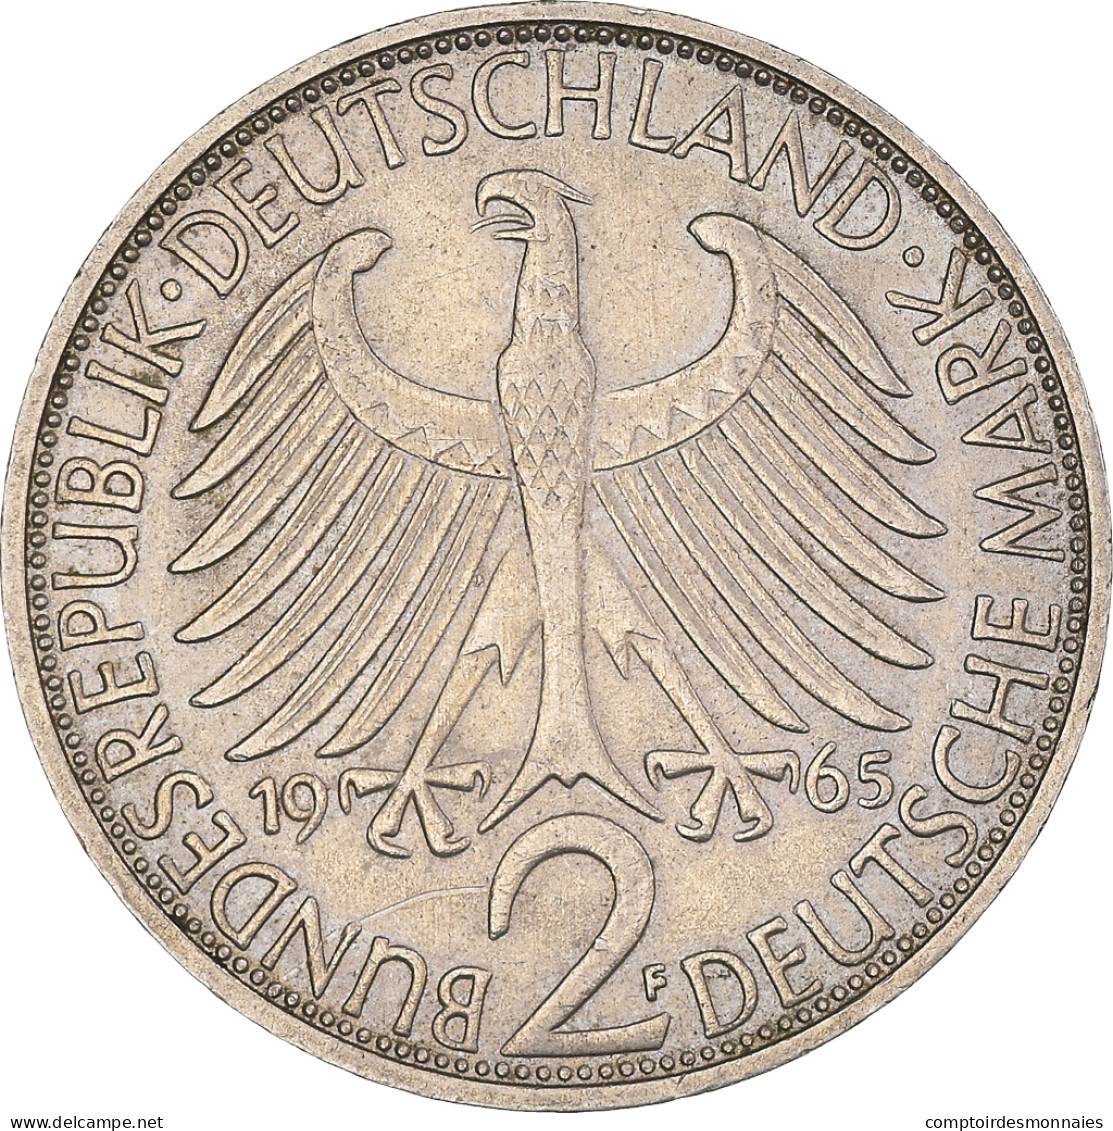 Monnaie, République Fédérale Allemande, 2 Mark, 1965, Stuttgart, TTB - 2 Mark